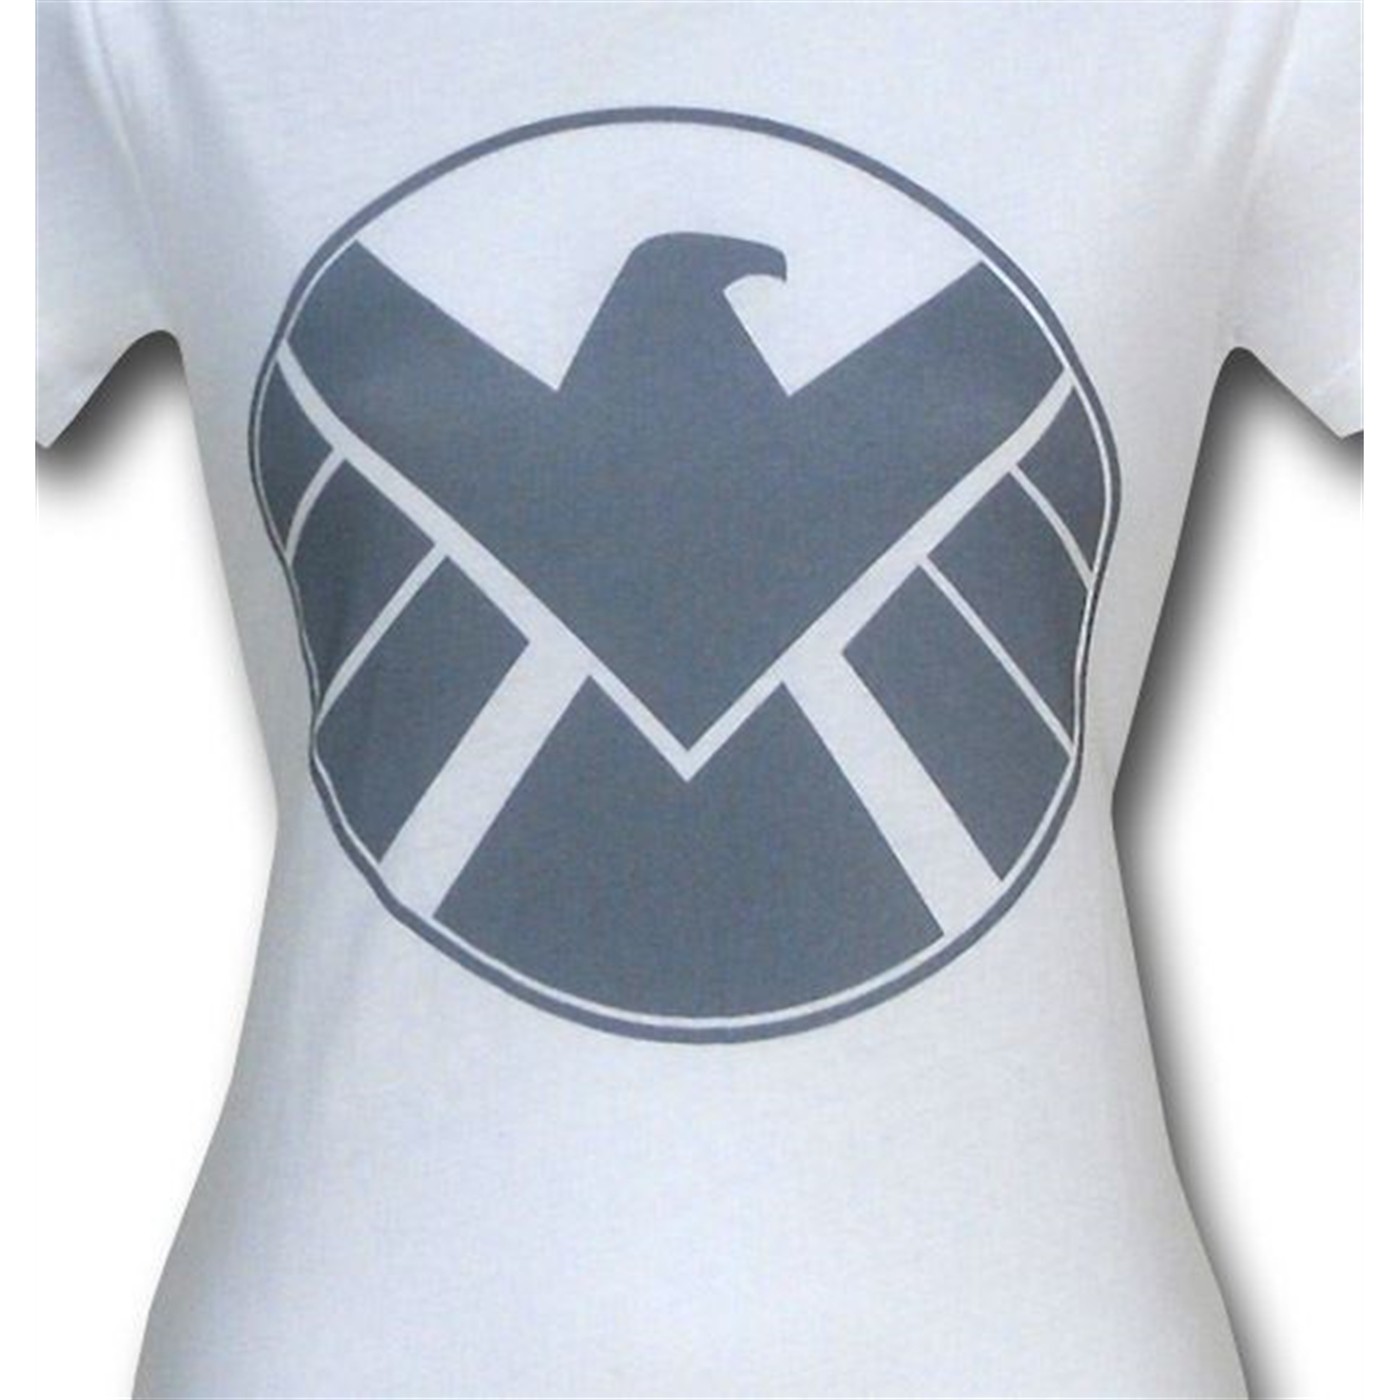 S.H.I.E.L.D. Silver Eagle Juniors T-Shirt